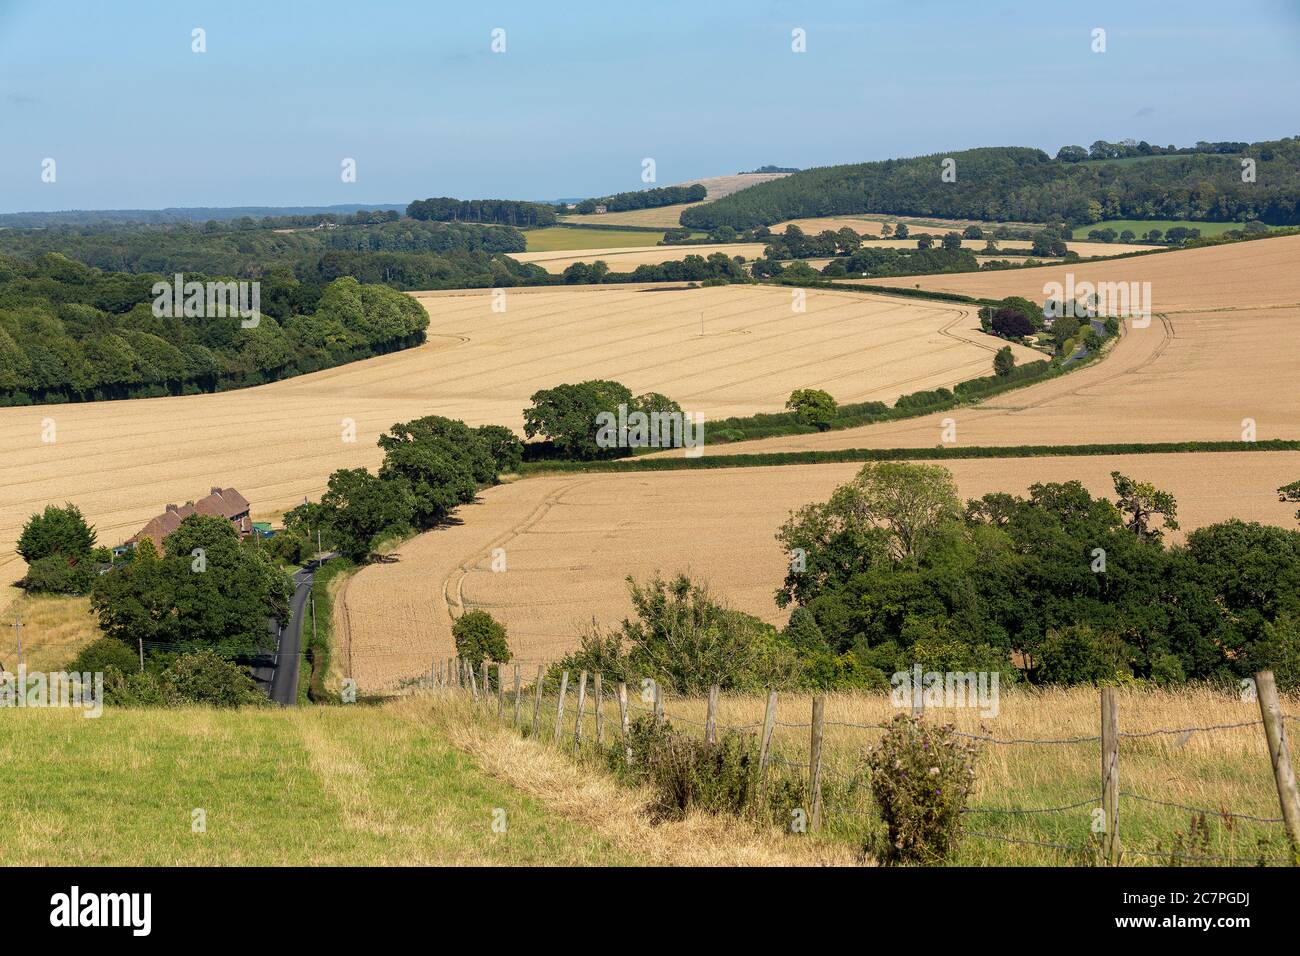 Typischer Bauernhof in englischer Landschaft. Sanfte Hügel der South Downs in Hampshire. Stockfoto